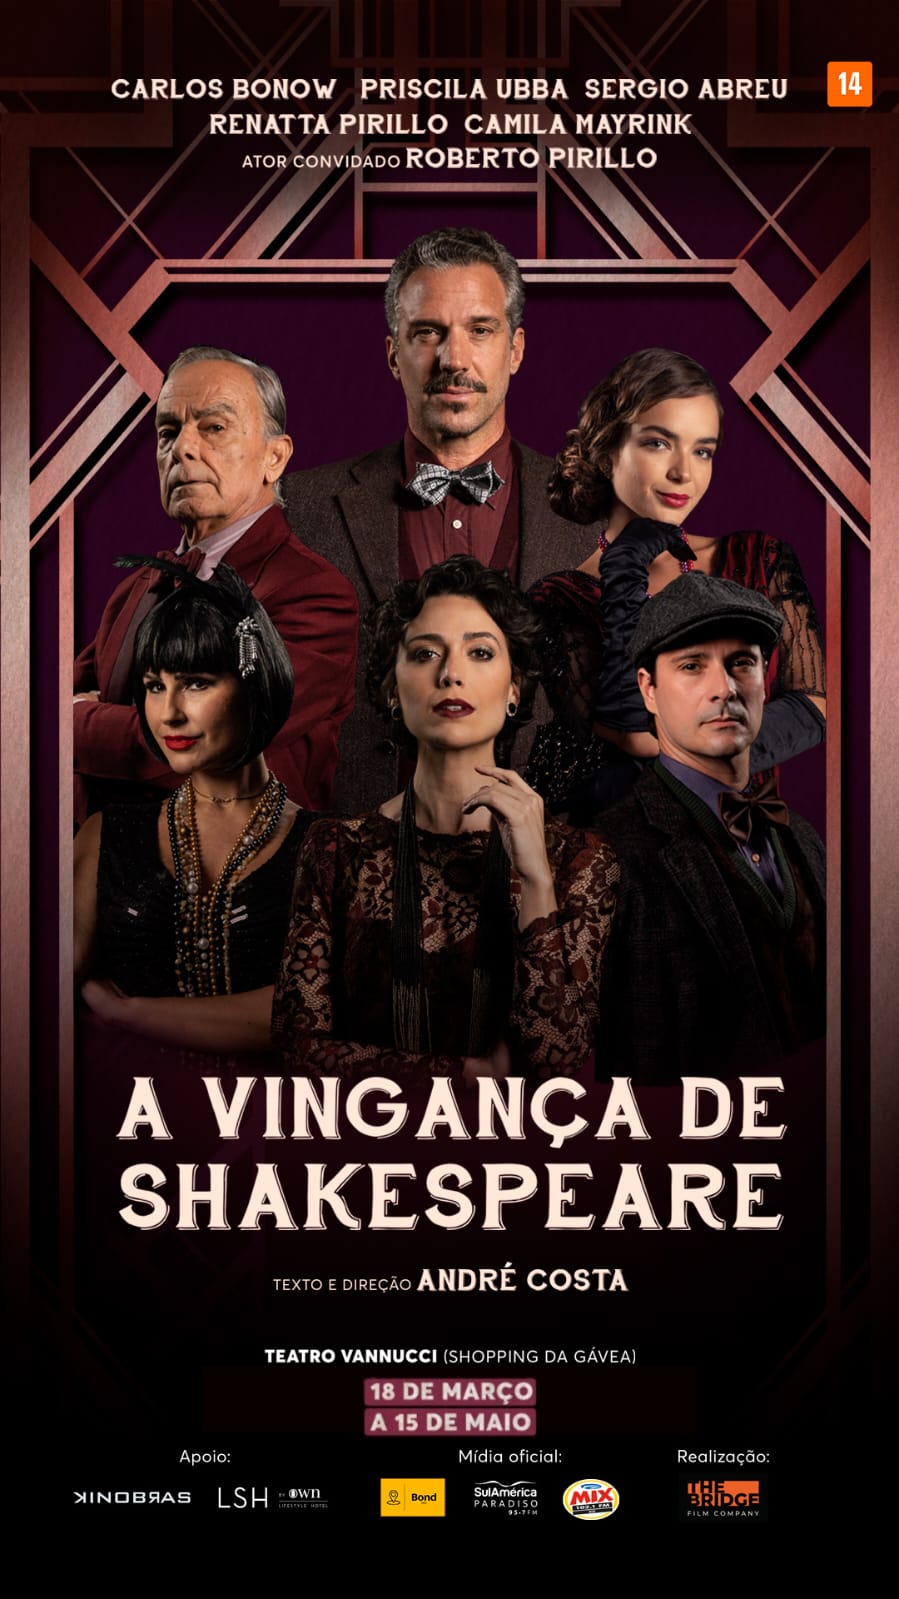 Montagem inspirada no teatro do absurdo, A Vingança de Shakespeare estreia no Teatro Vannucci, dia 18 de março, 6ªf, às 21 horas